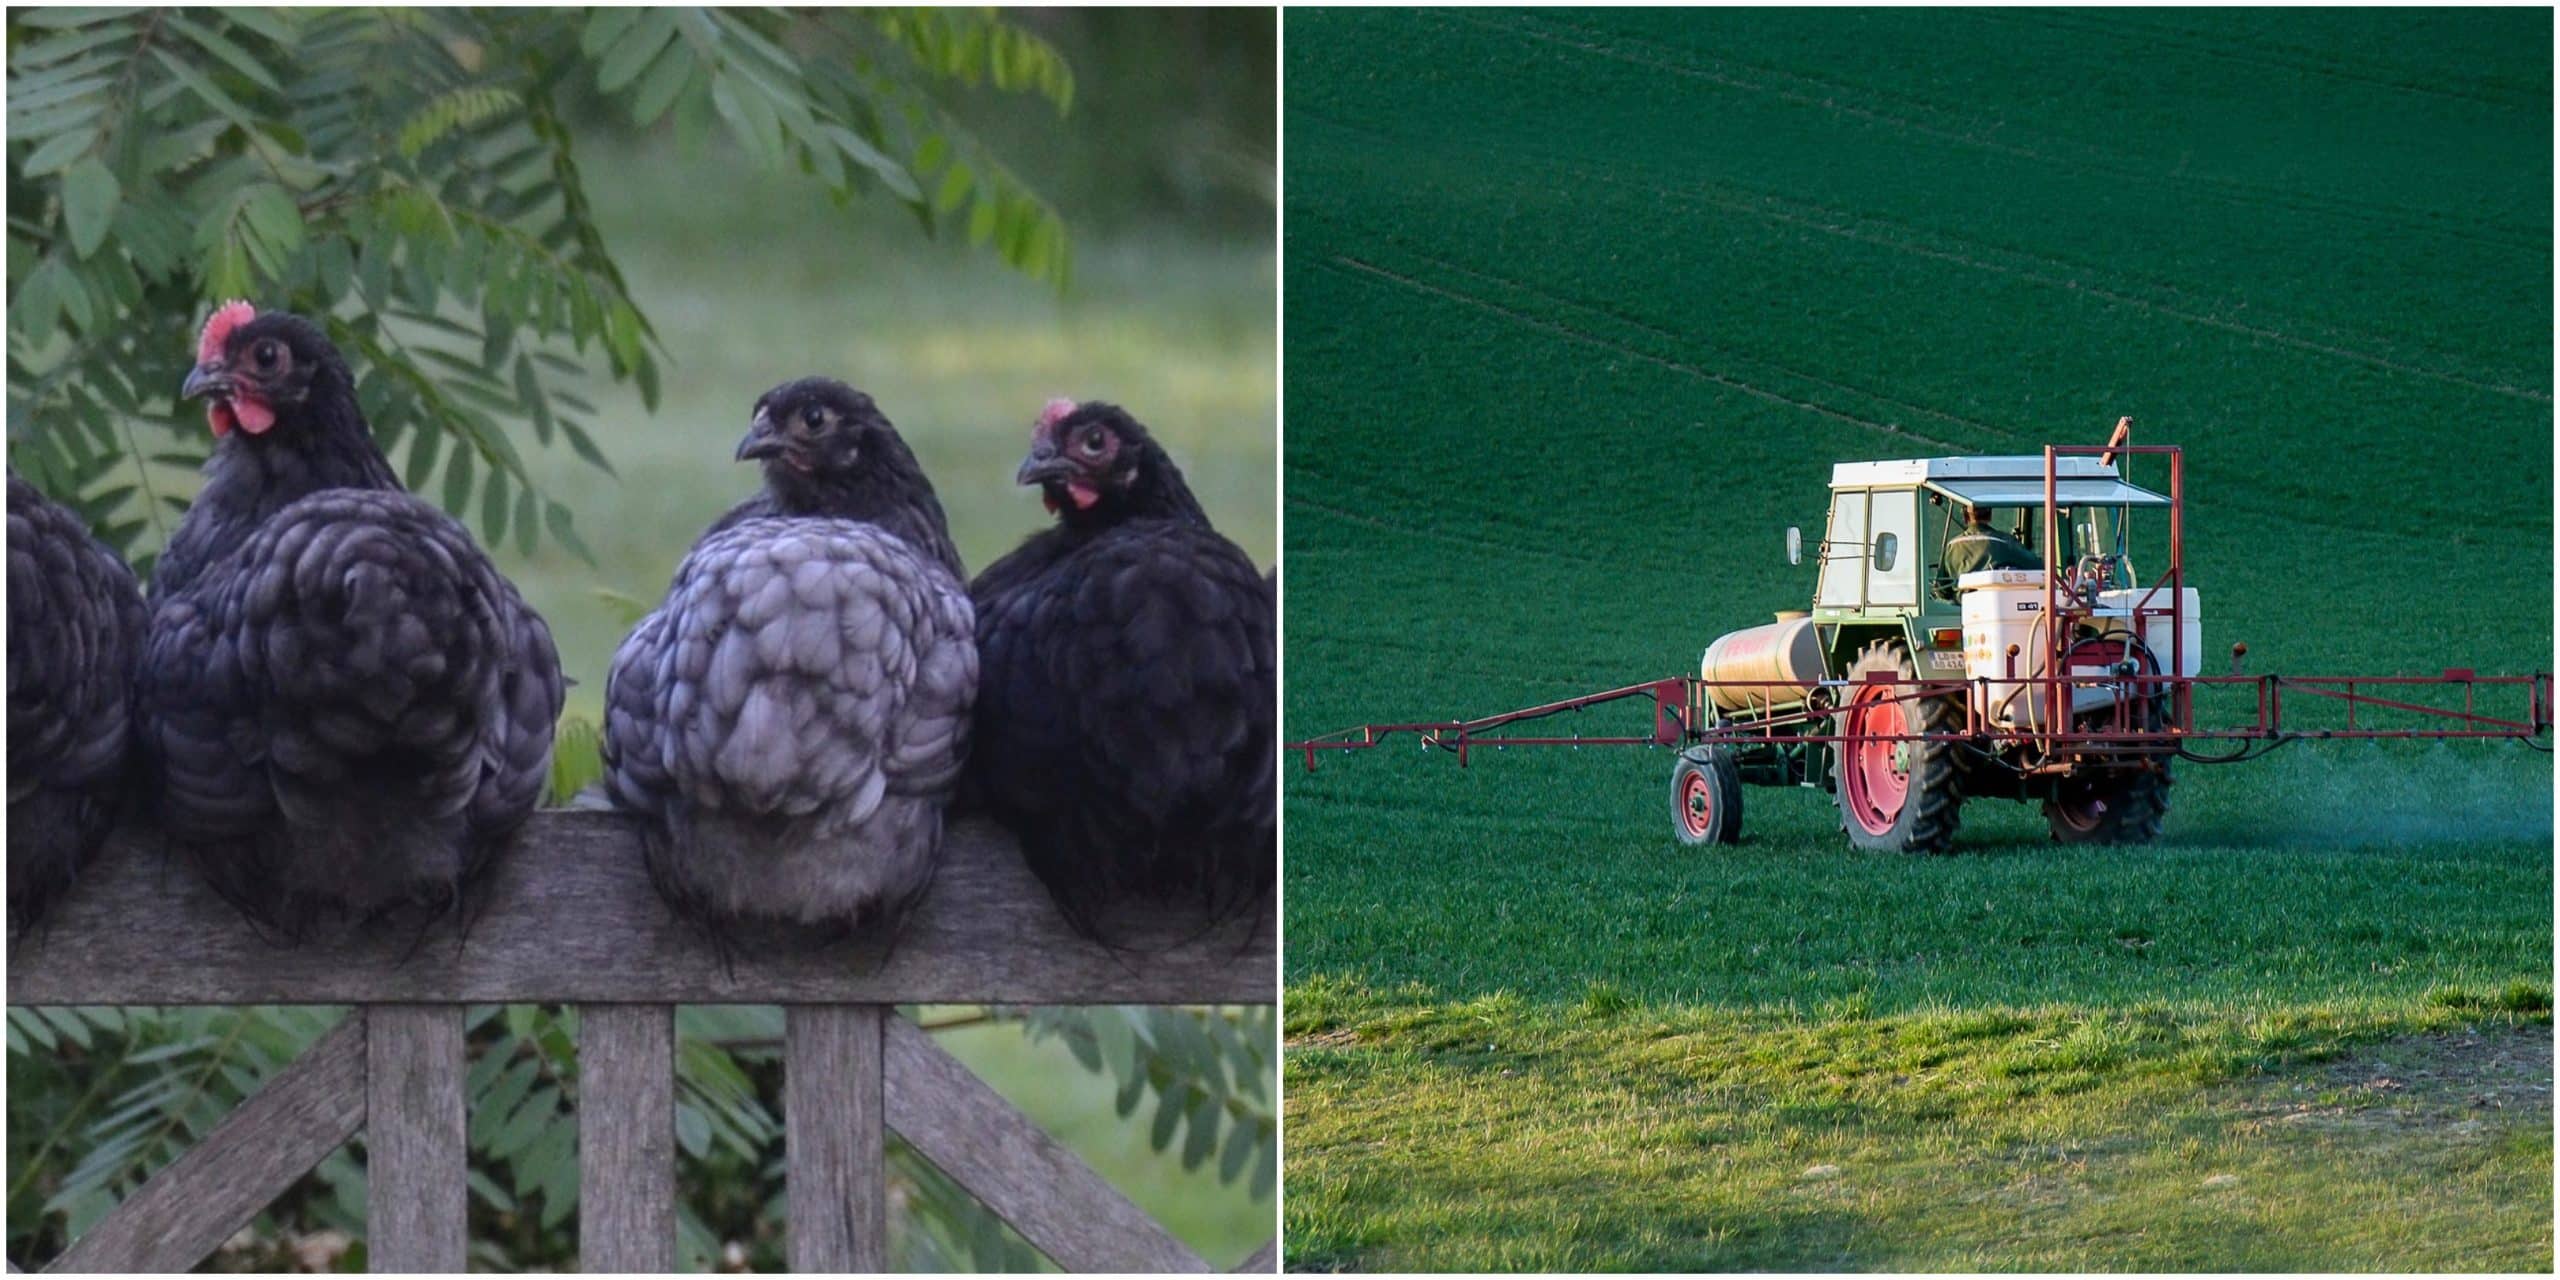 , En Francia están sustituyendo pesticidas por gallinas. Se comen los bichos y no contaminan.